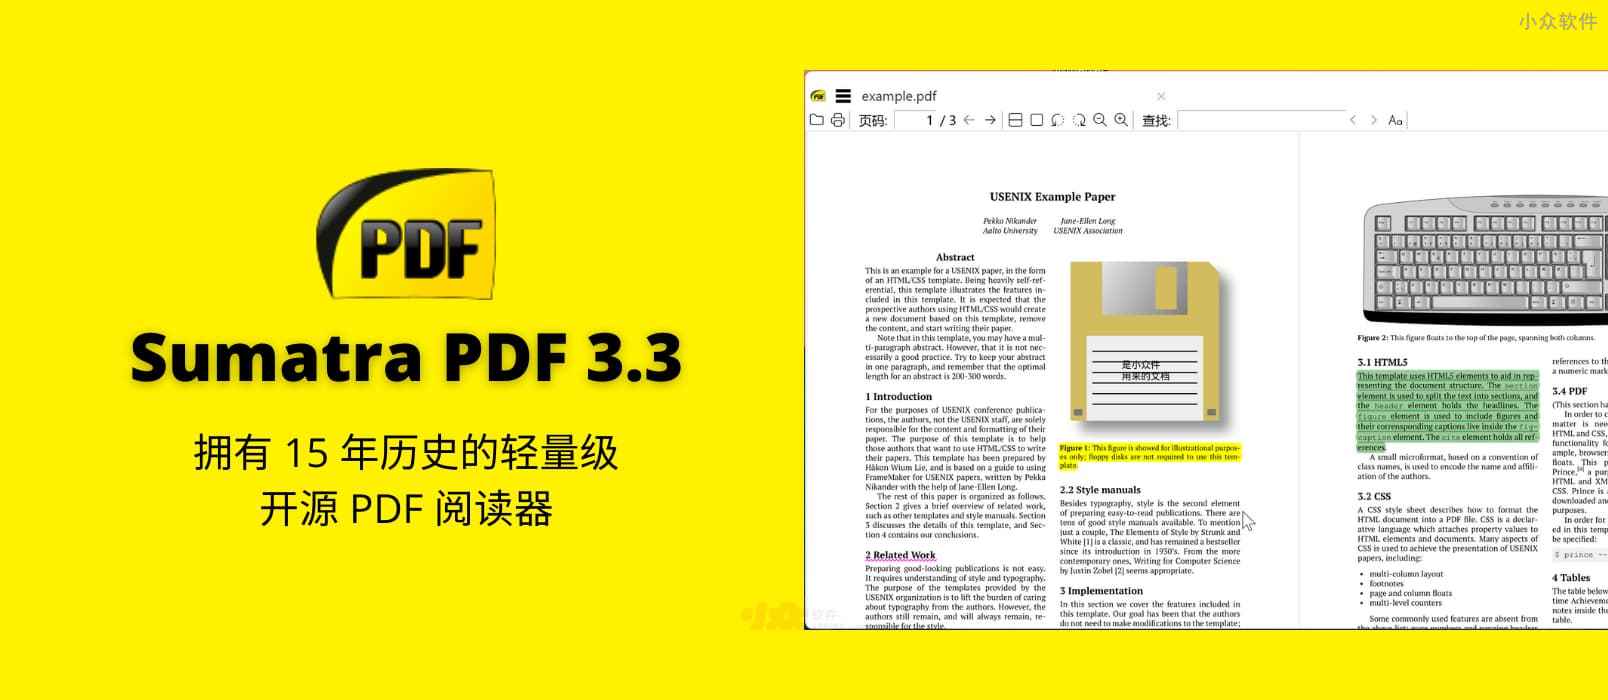 Sumatra PDF 3.3 版本发布，拥有 15 年历史的轻量级开源 PDF 阅读器